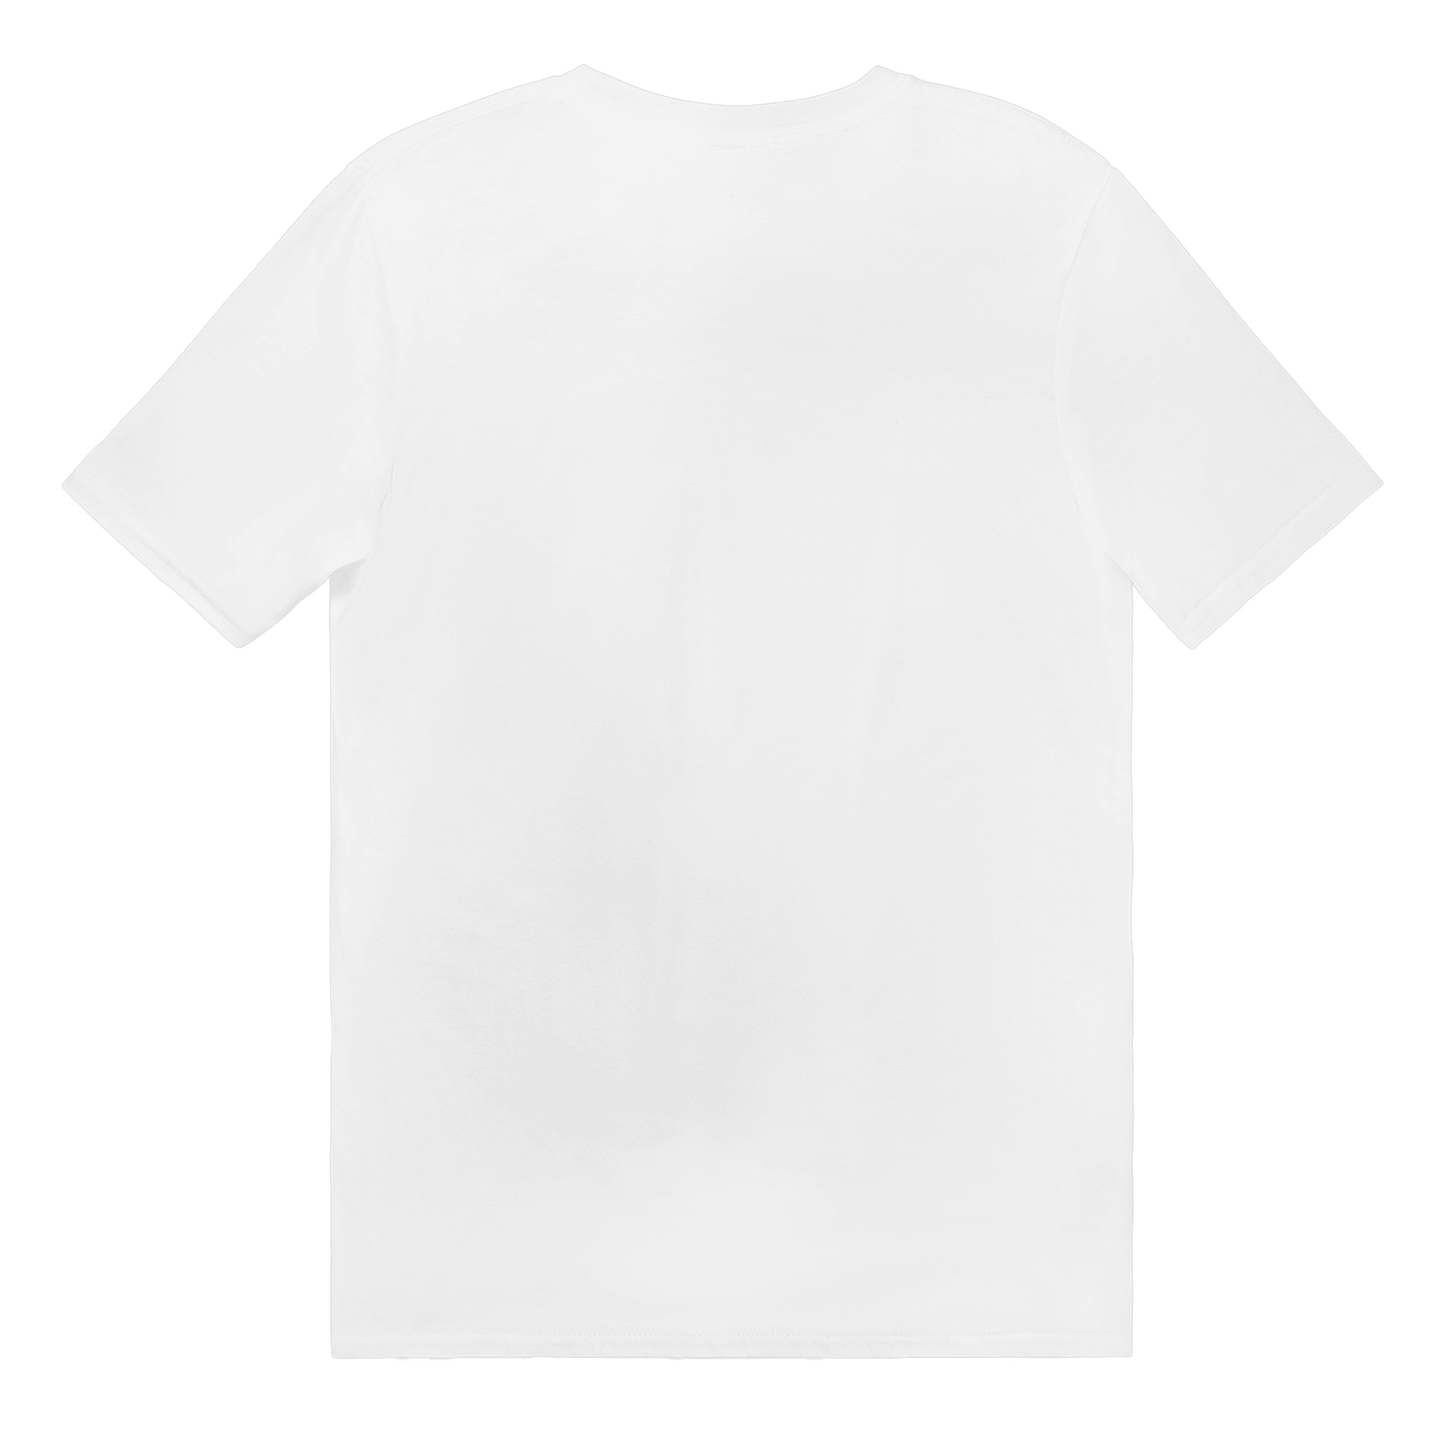 Makaroner och Köttbullar - T-shirt 